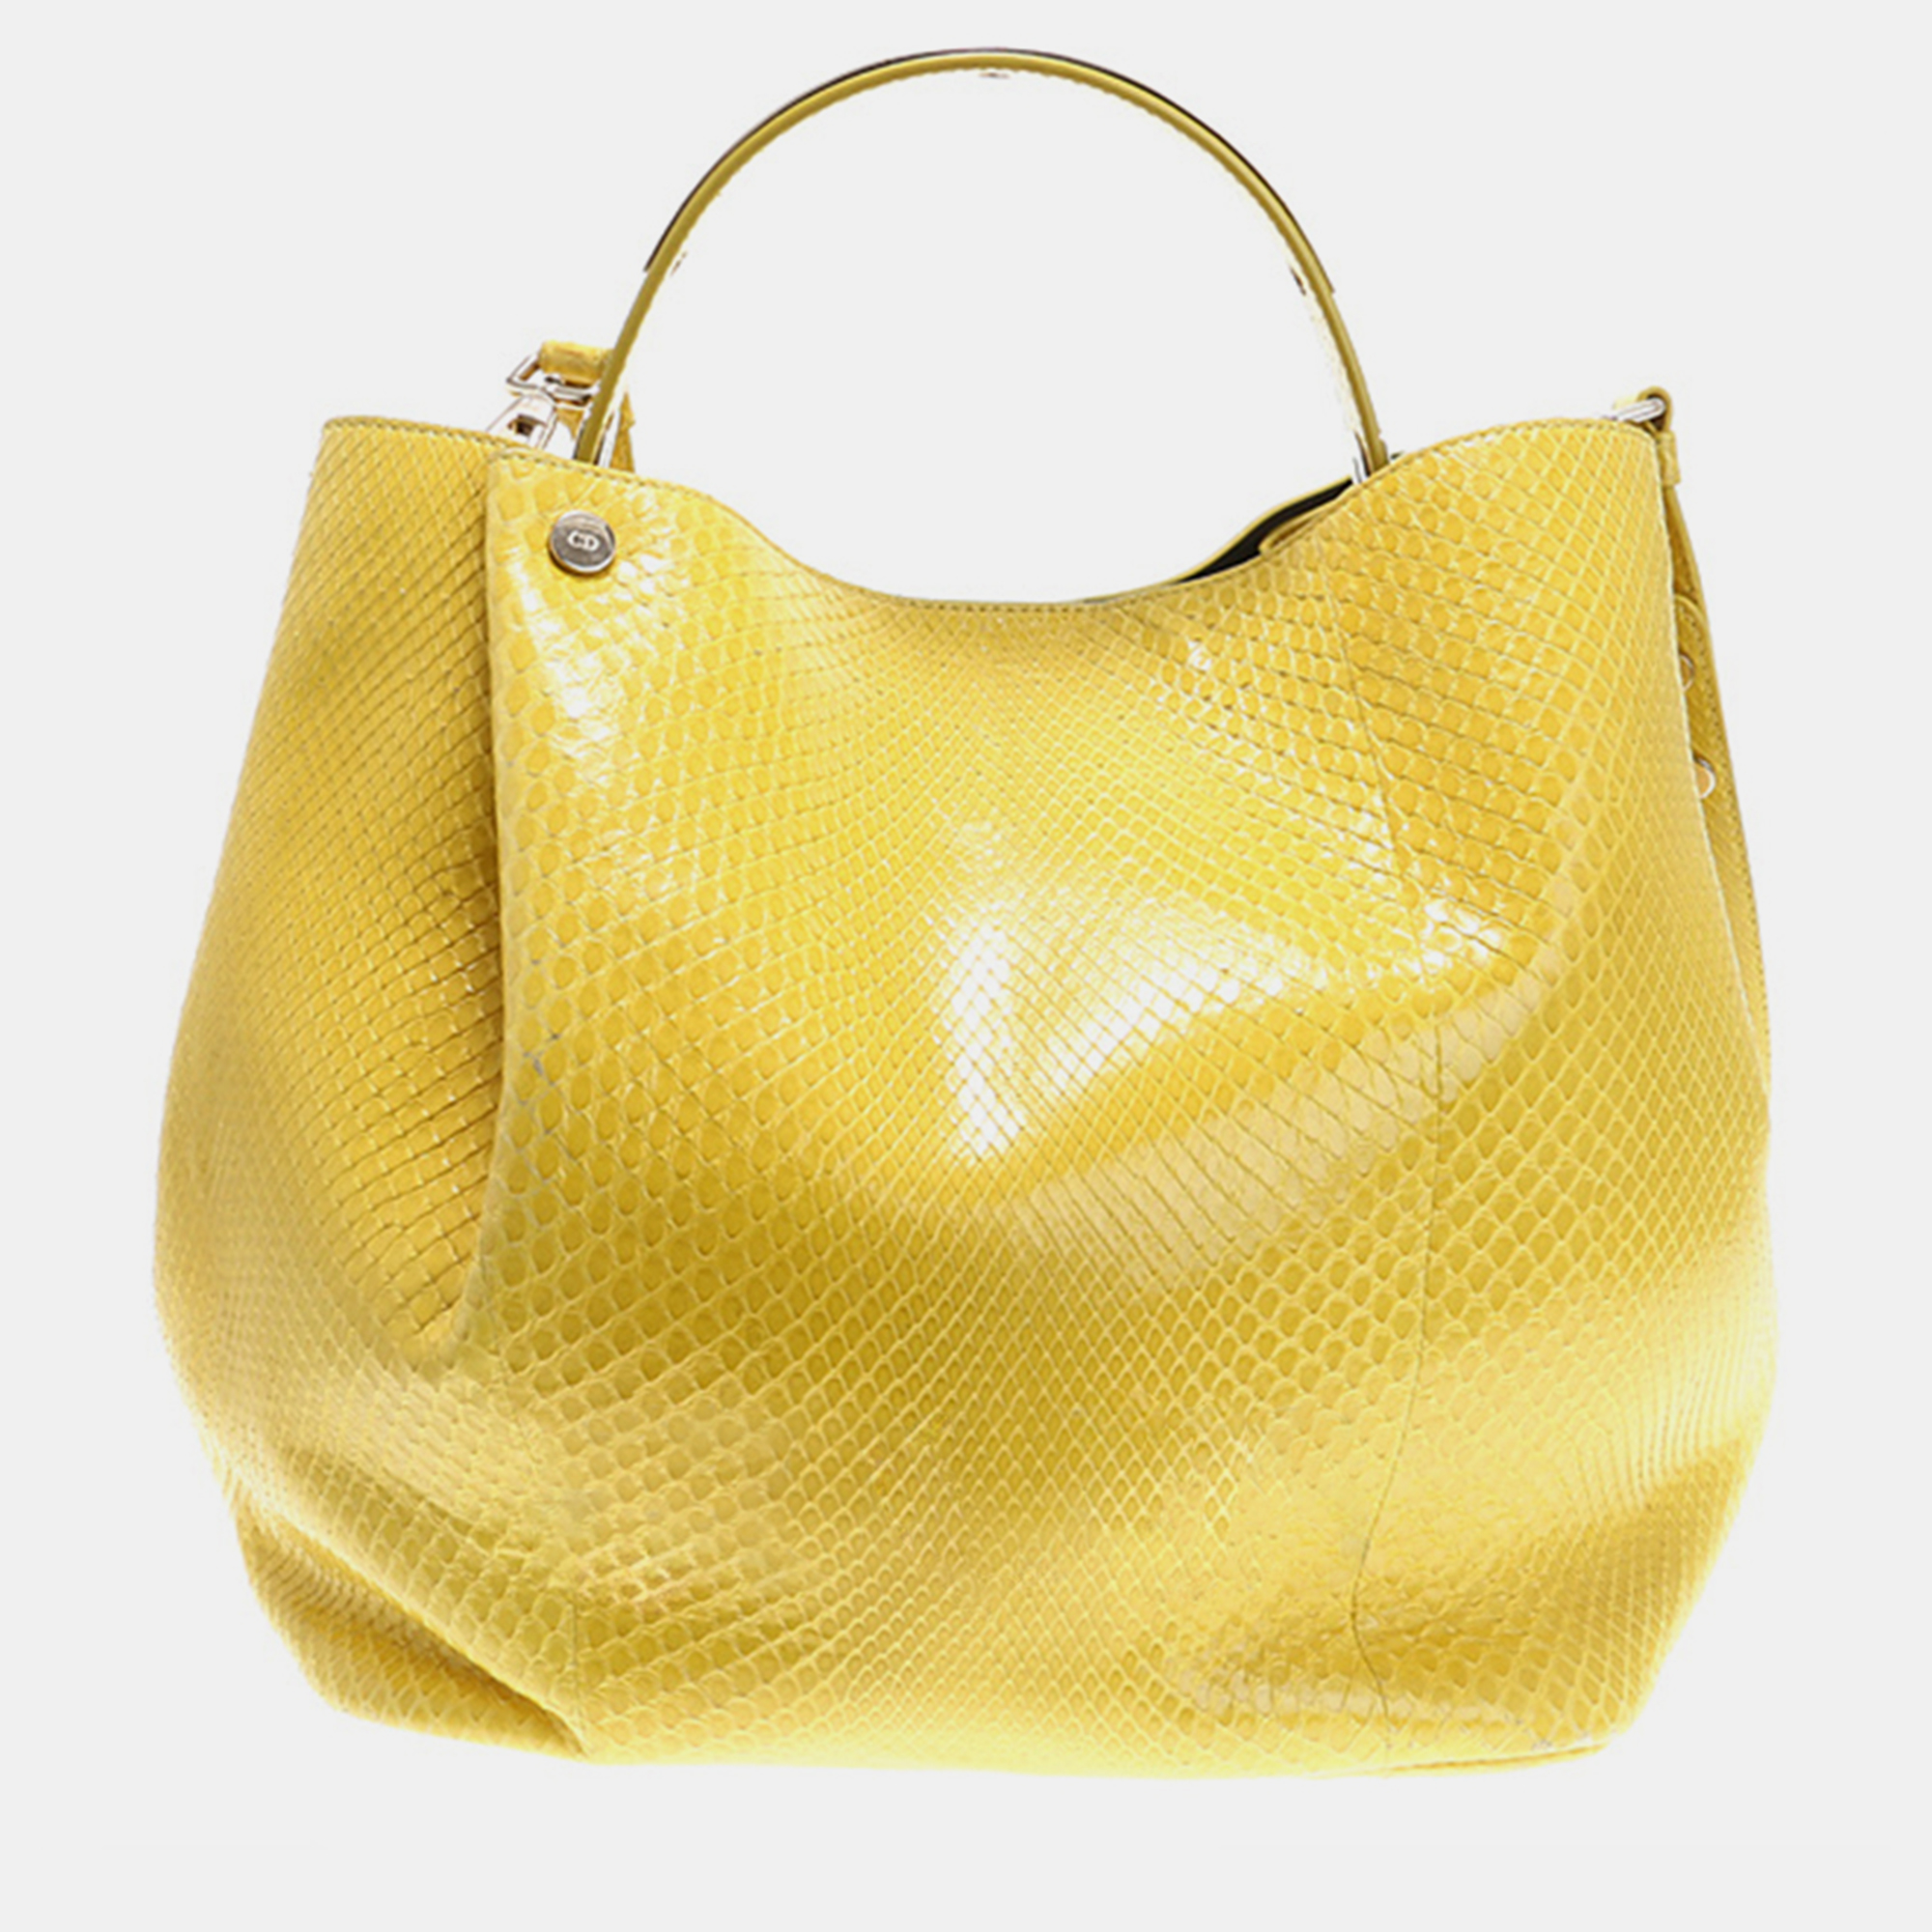 Christian dior yellow python leather tote bag